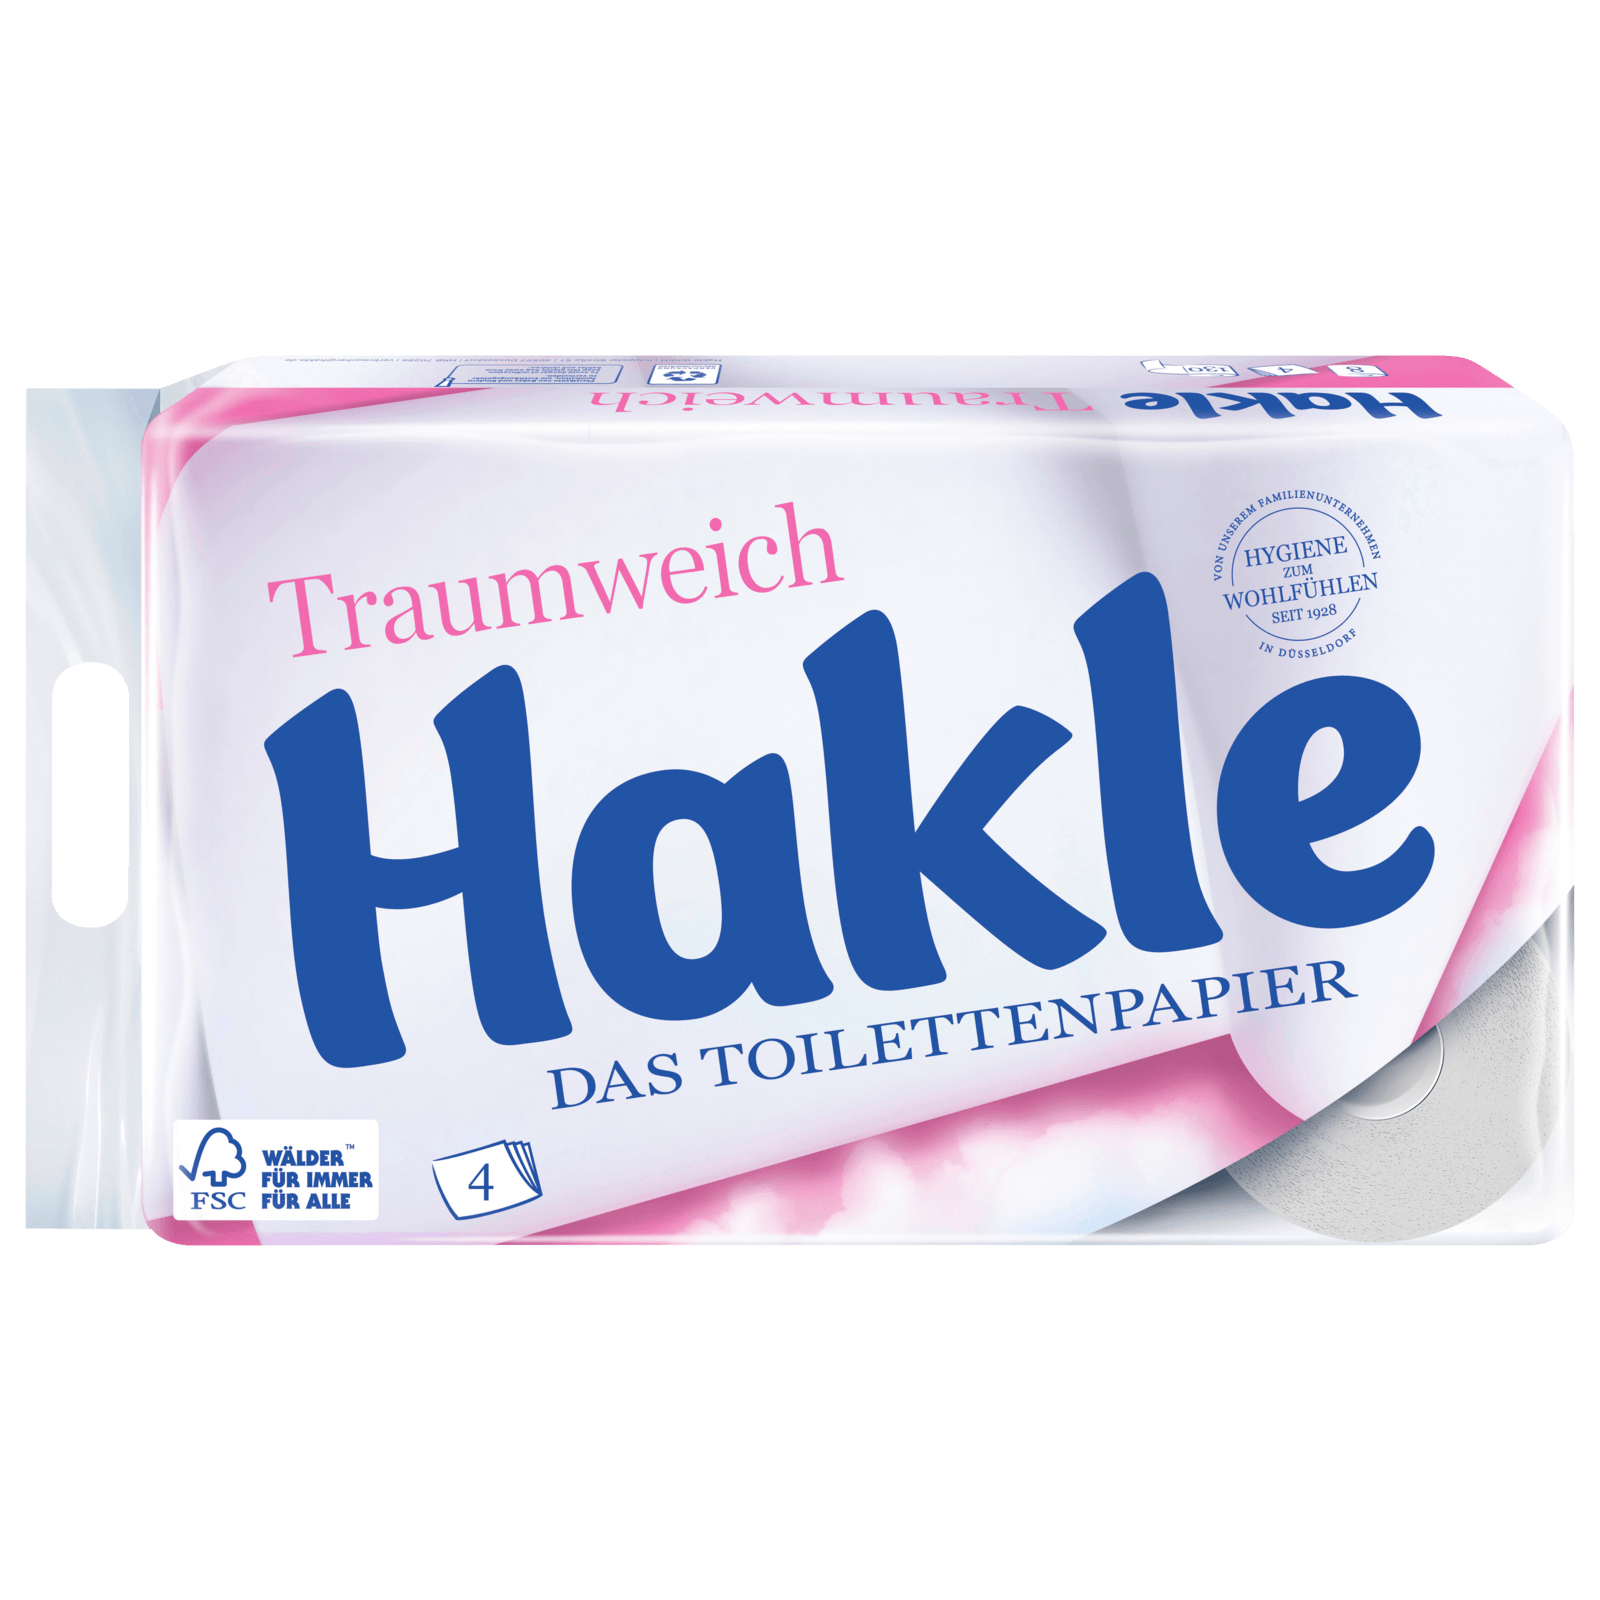 Traumweich REWE Hakle online bestellen! 8x130 Blatt Toilettenpapier bei 4-lagig